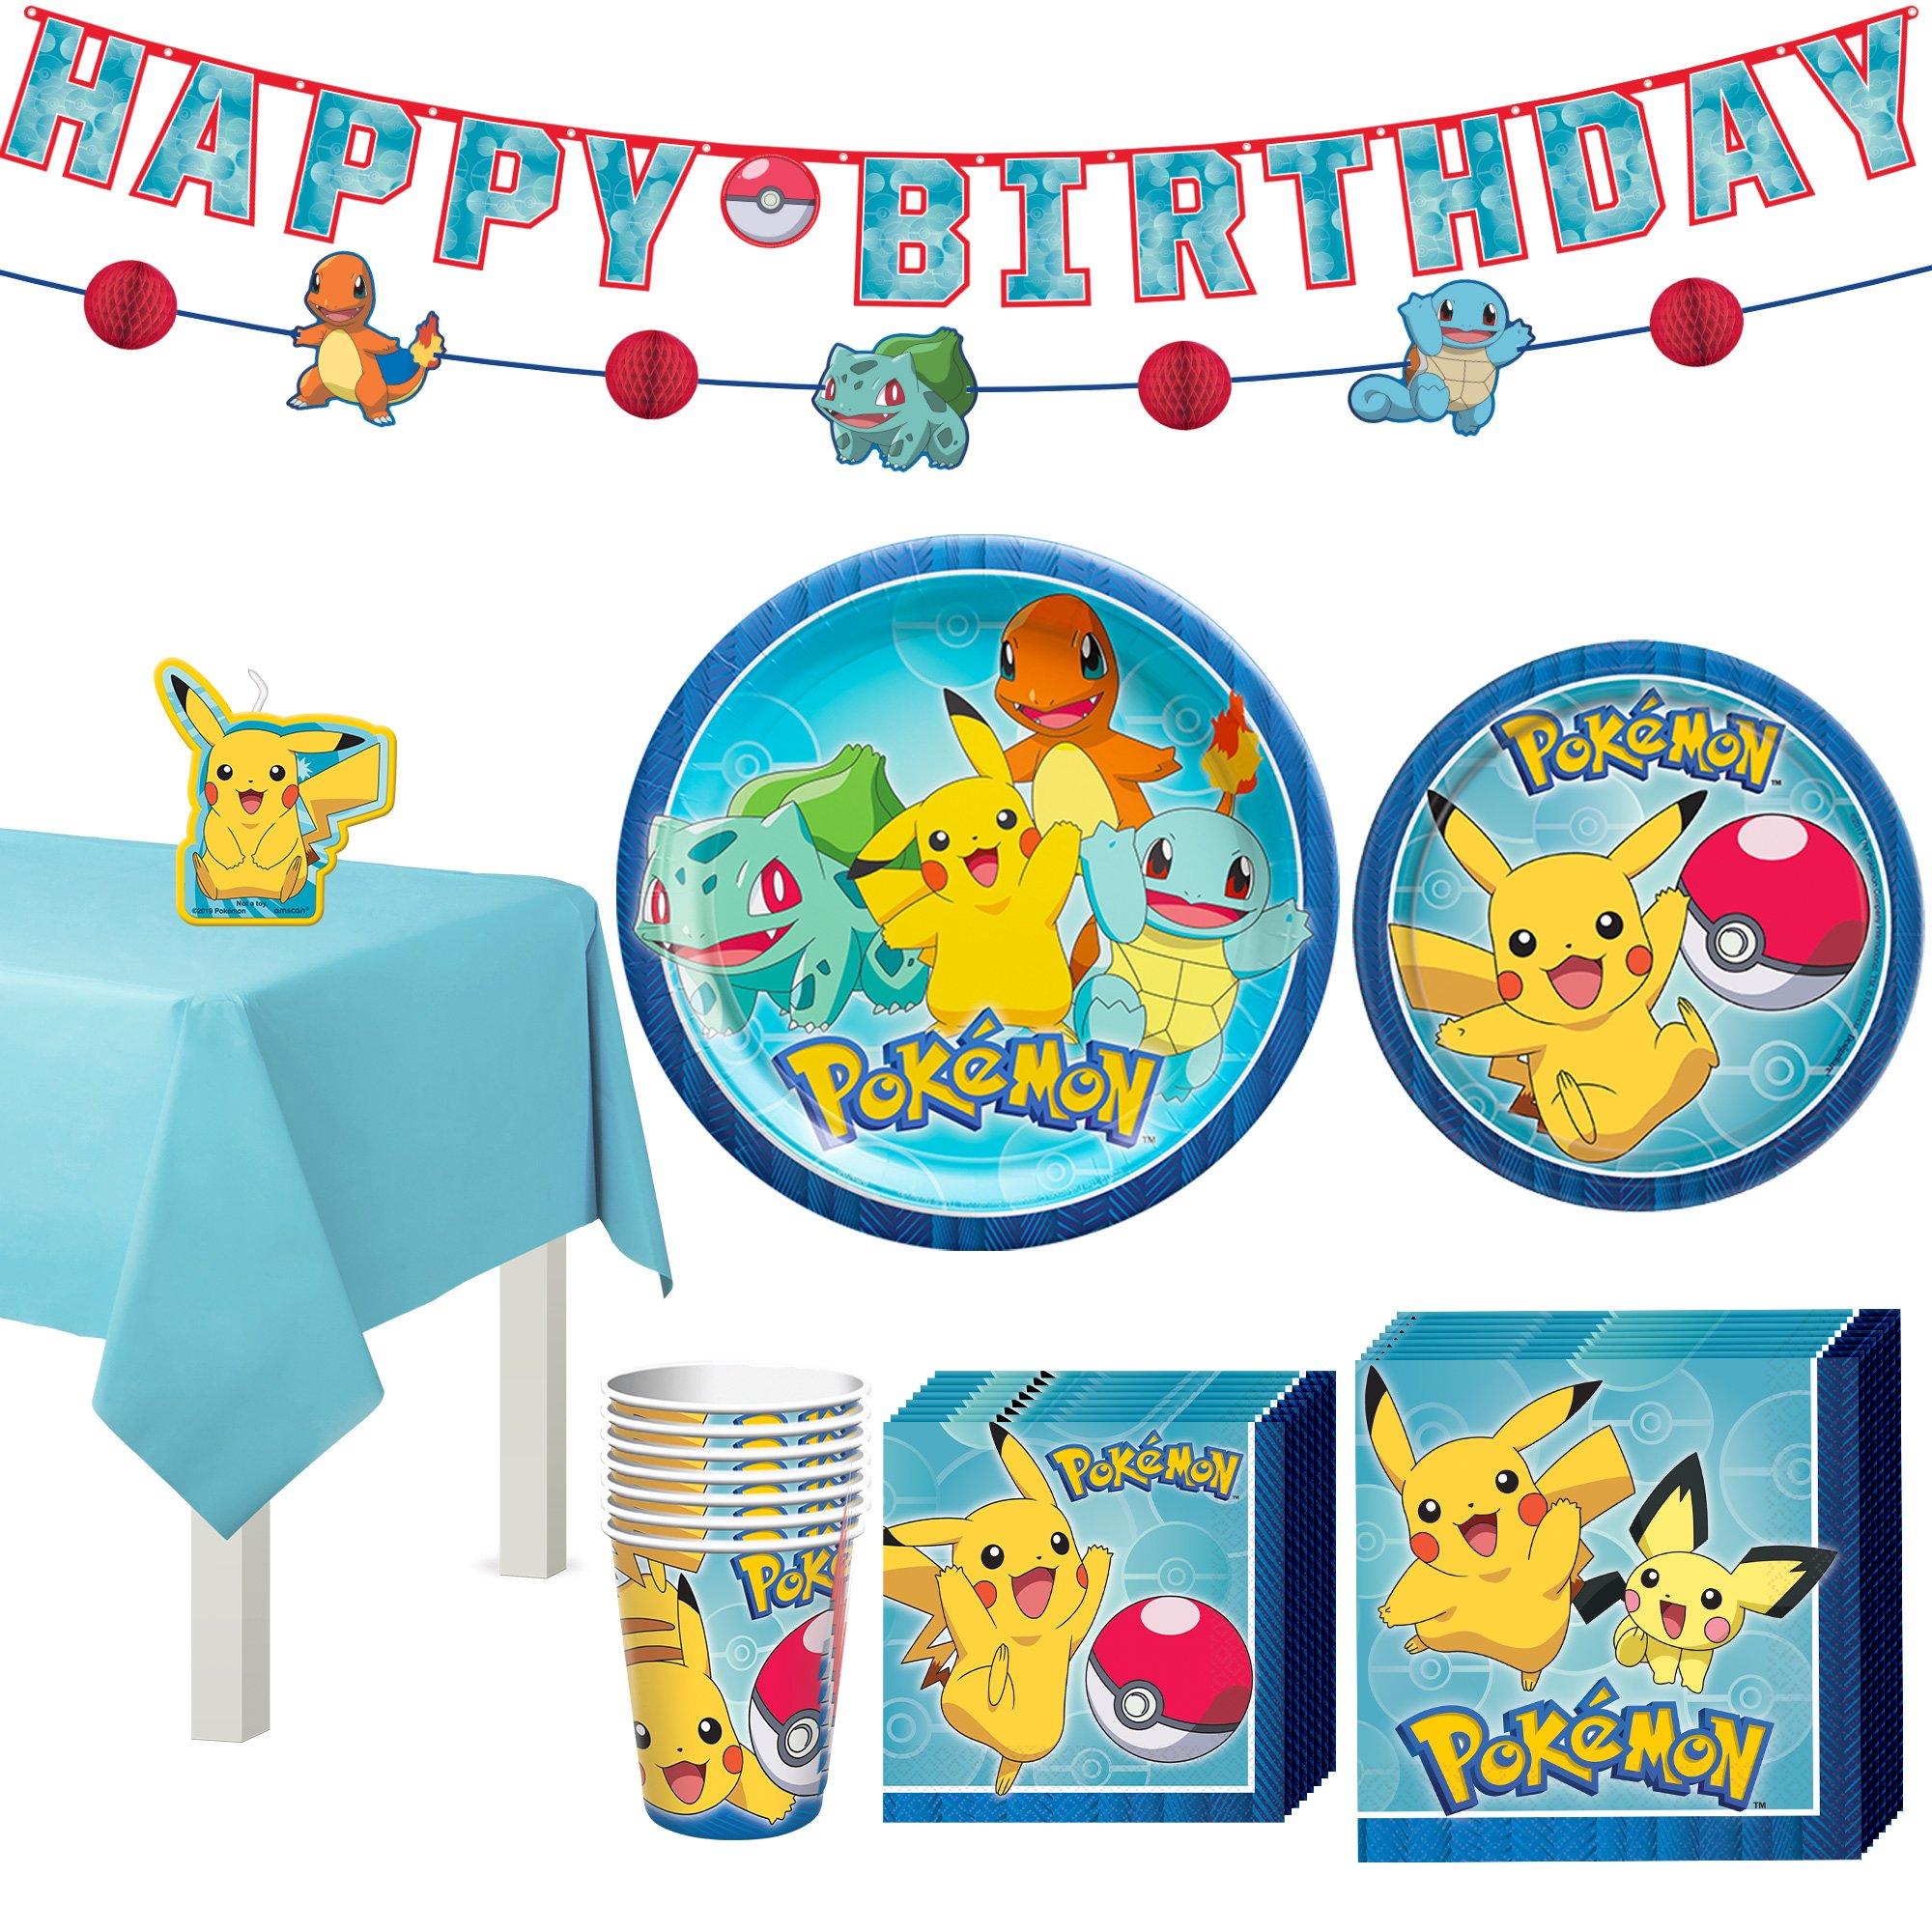 Pokémon party favors  Pokemon party favors, Pokemon birthday party, Pokemon  party